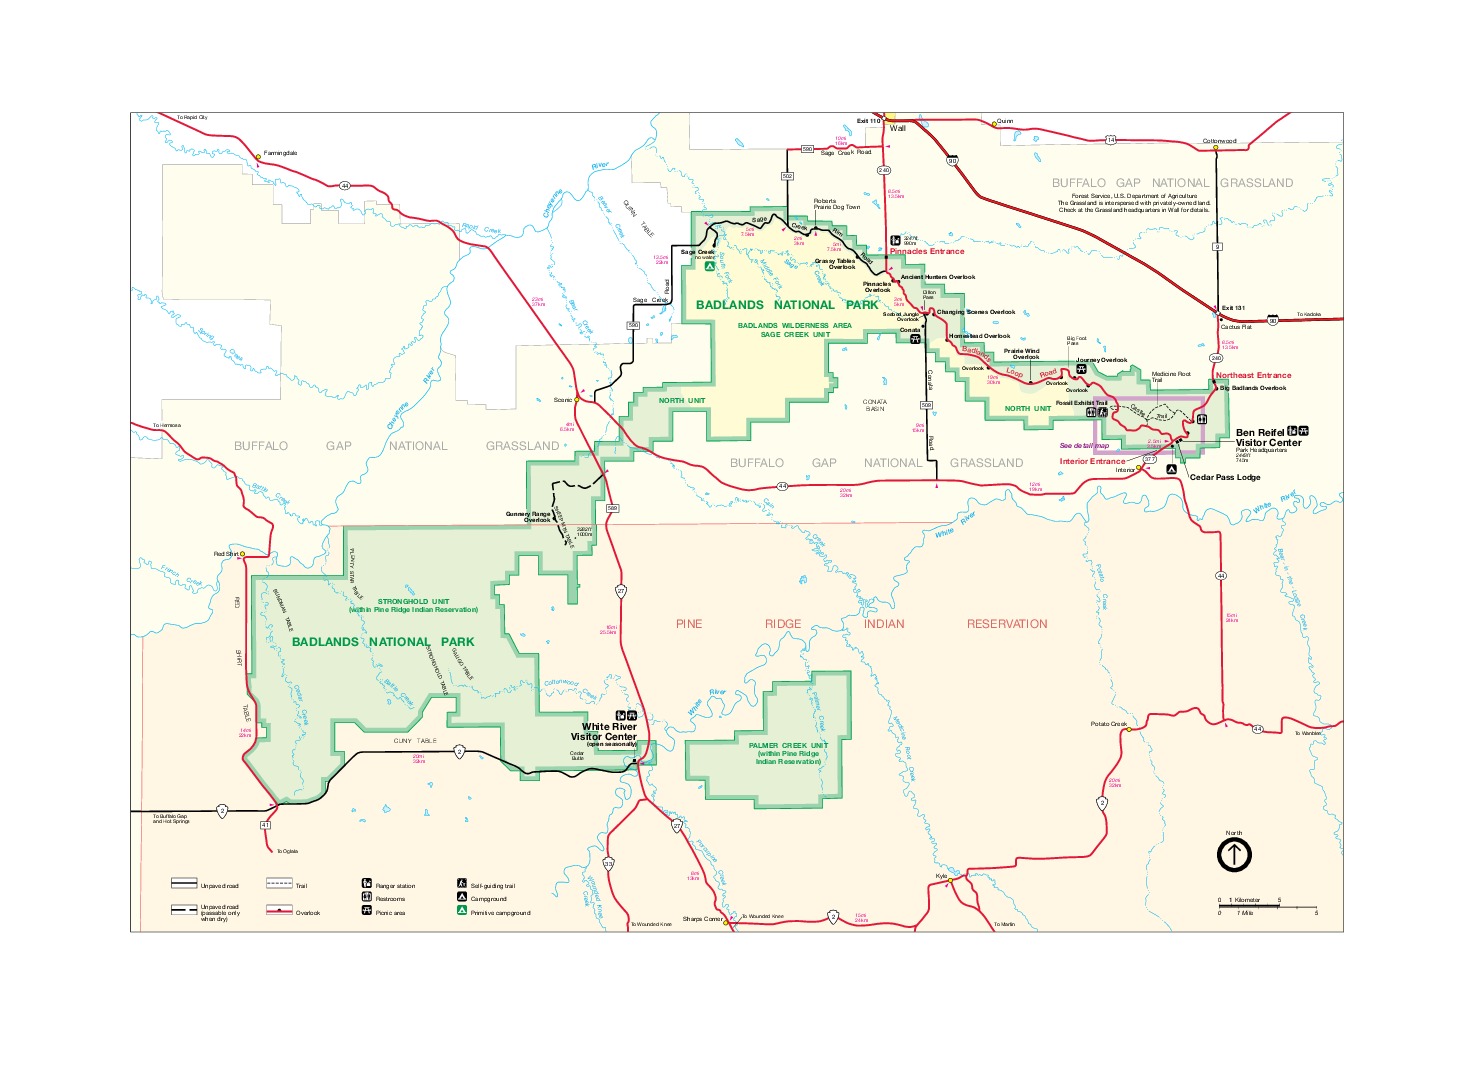 Mapa del Parque Nacional los Badlands, Dakota del Sur, Estados Unidos